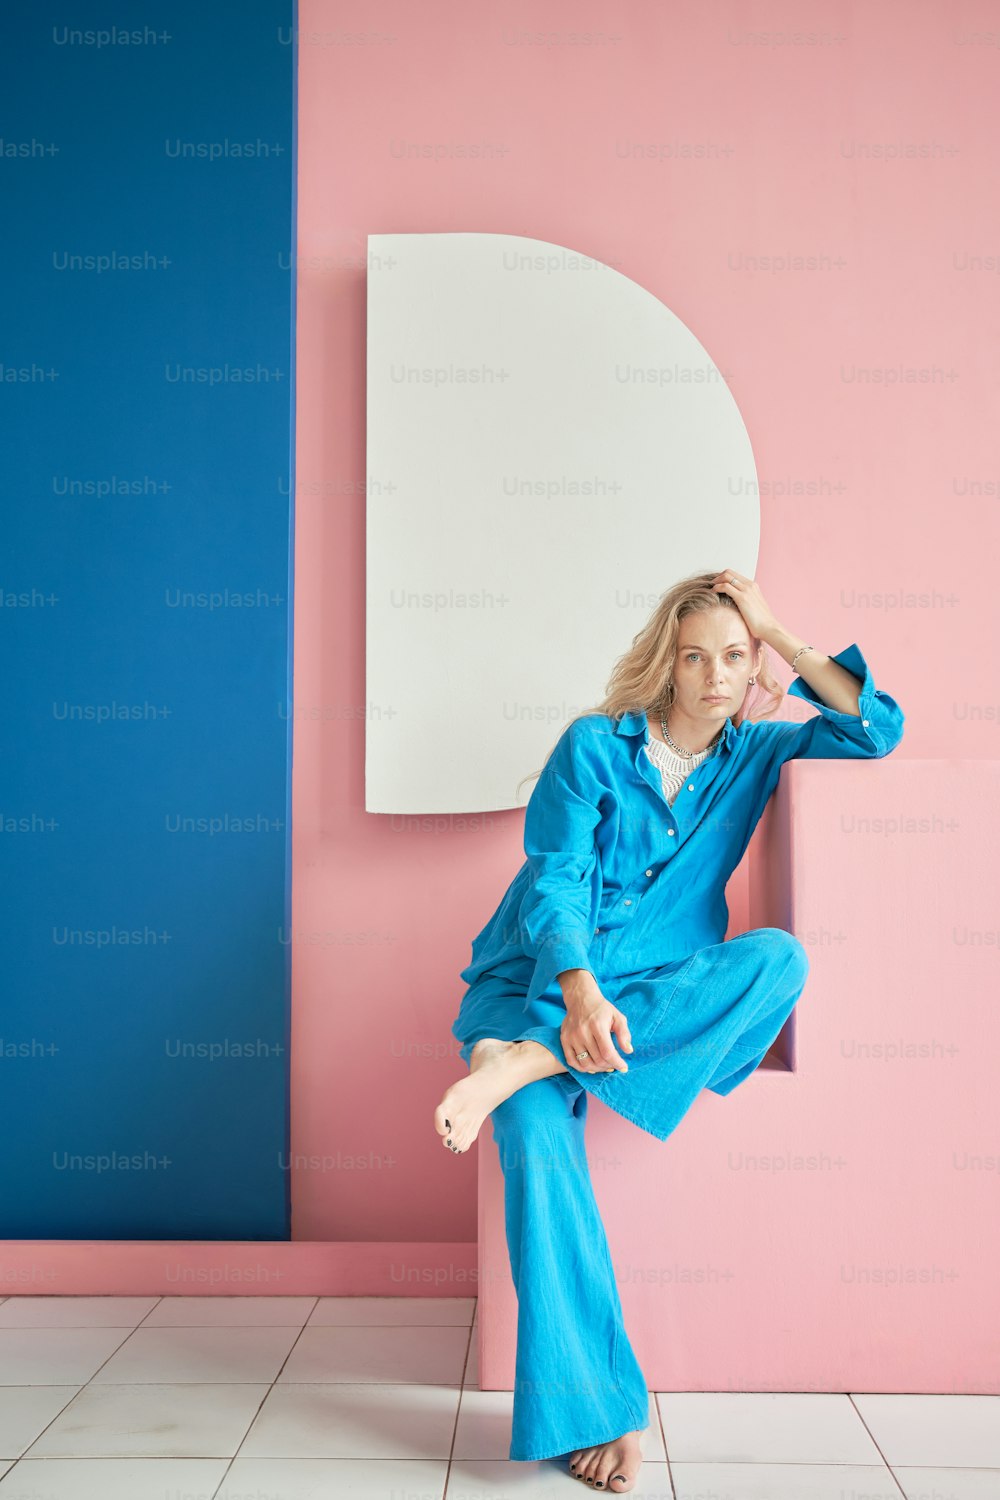 Eine Frau in einem blauen Overall, die auf einer rosa und blauen Wand sitzt